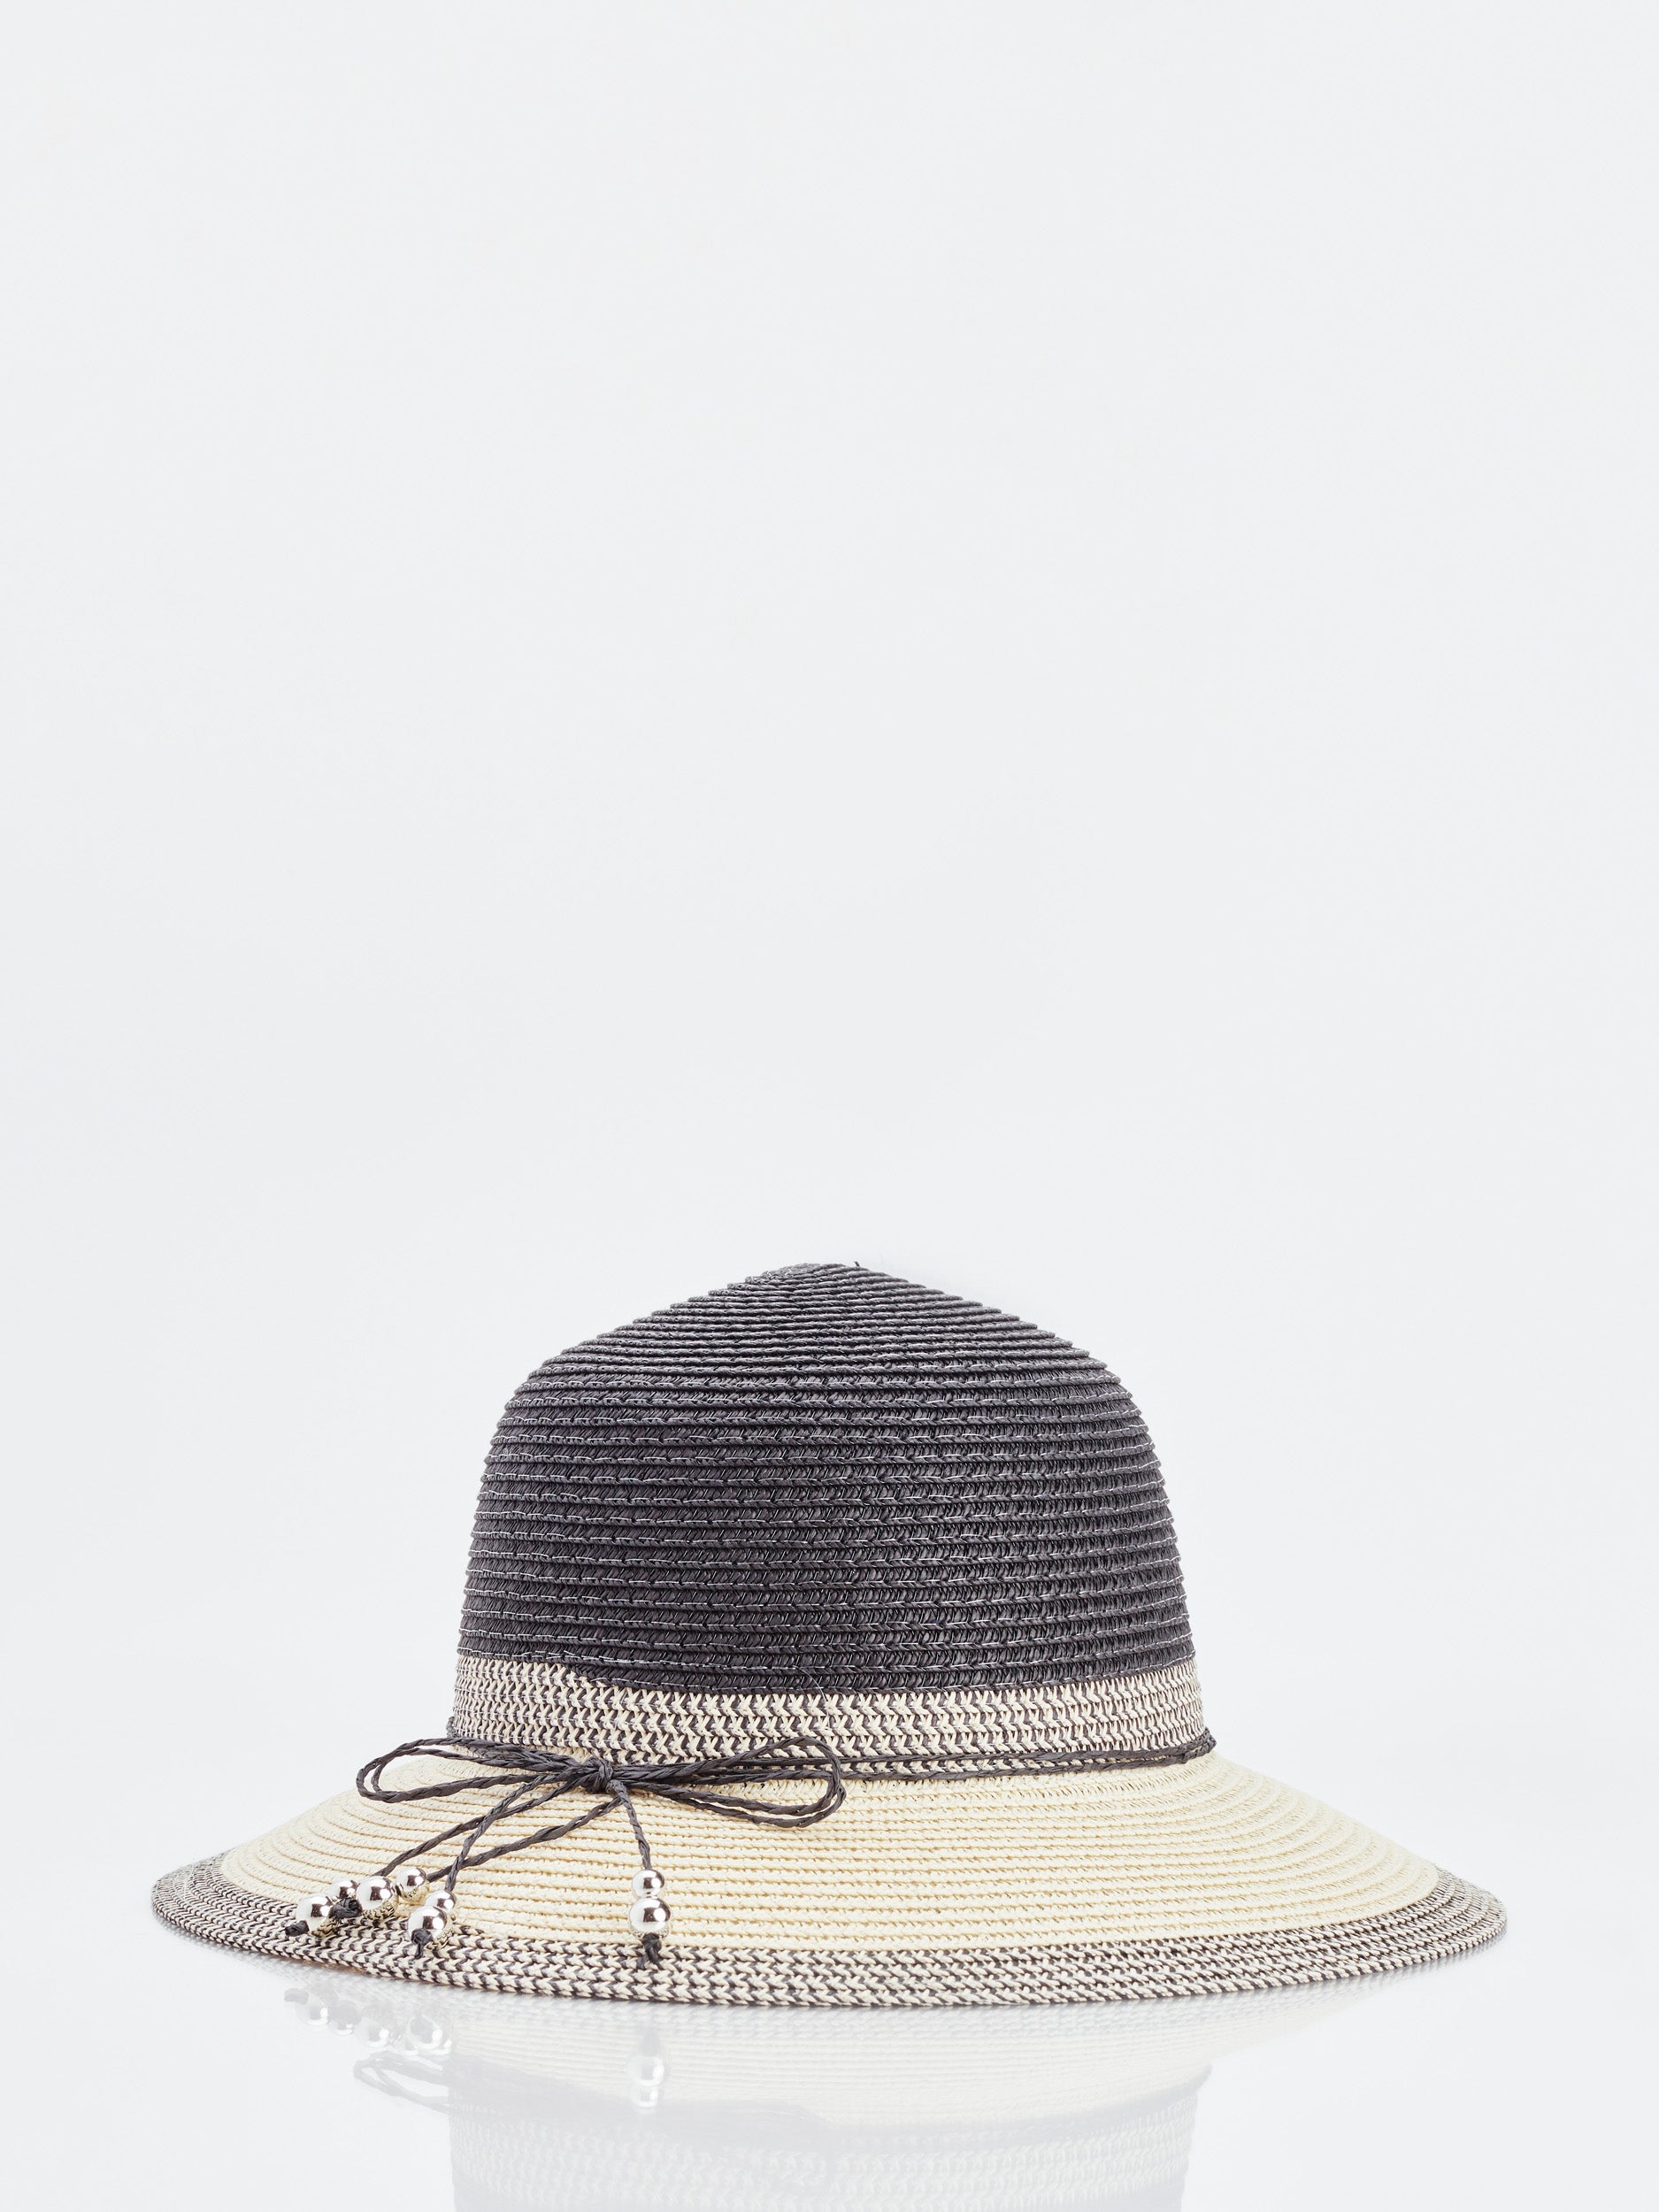 Women's Hats | Marie Claire Boutiques